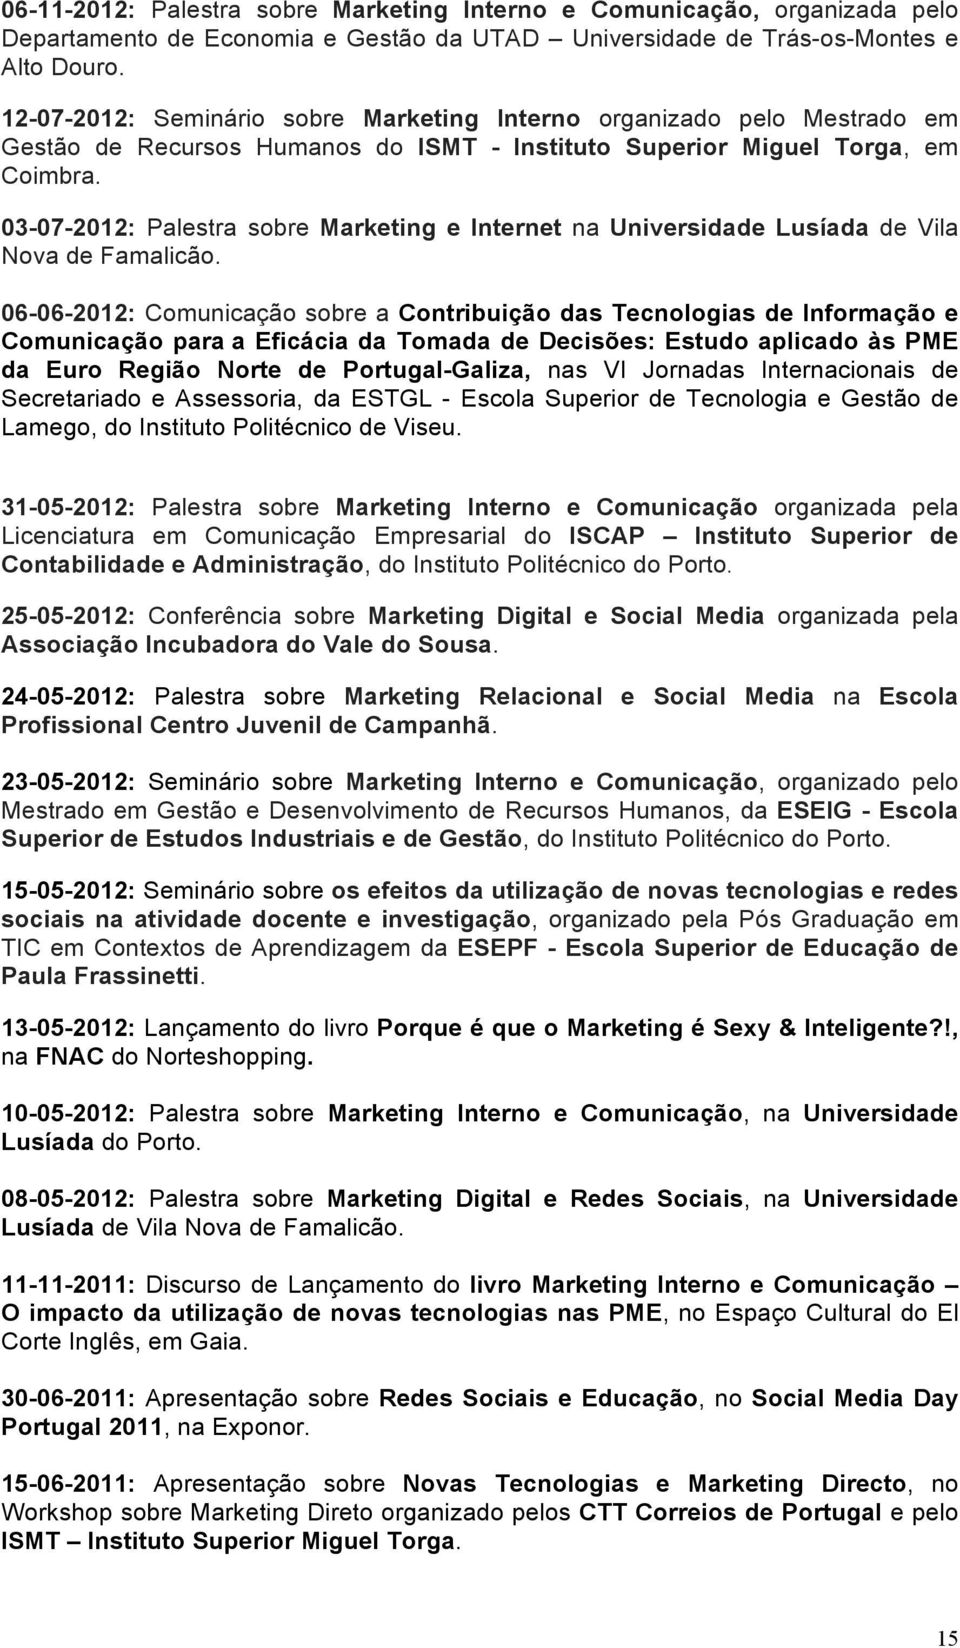 03-07-2012: Palestra sobre Marketing e Internet na Universidade Lusíada de Vila Nova de Famalicão.